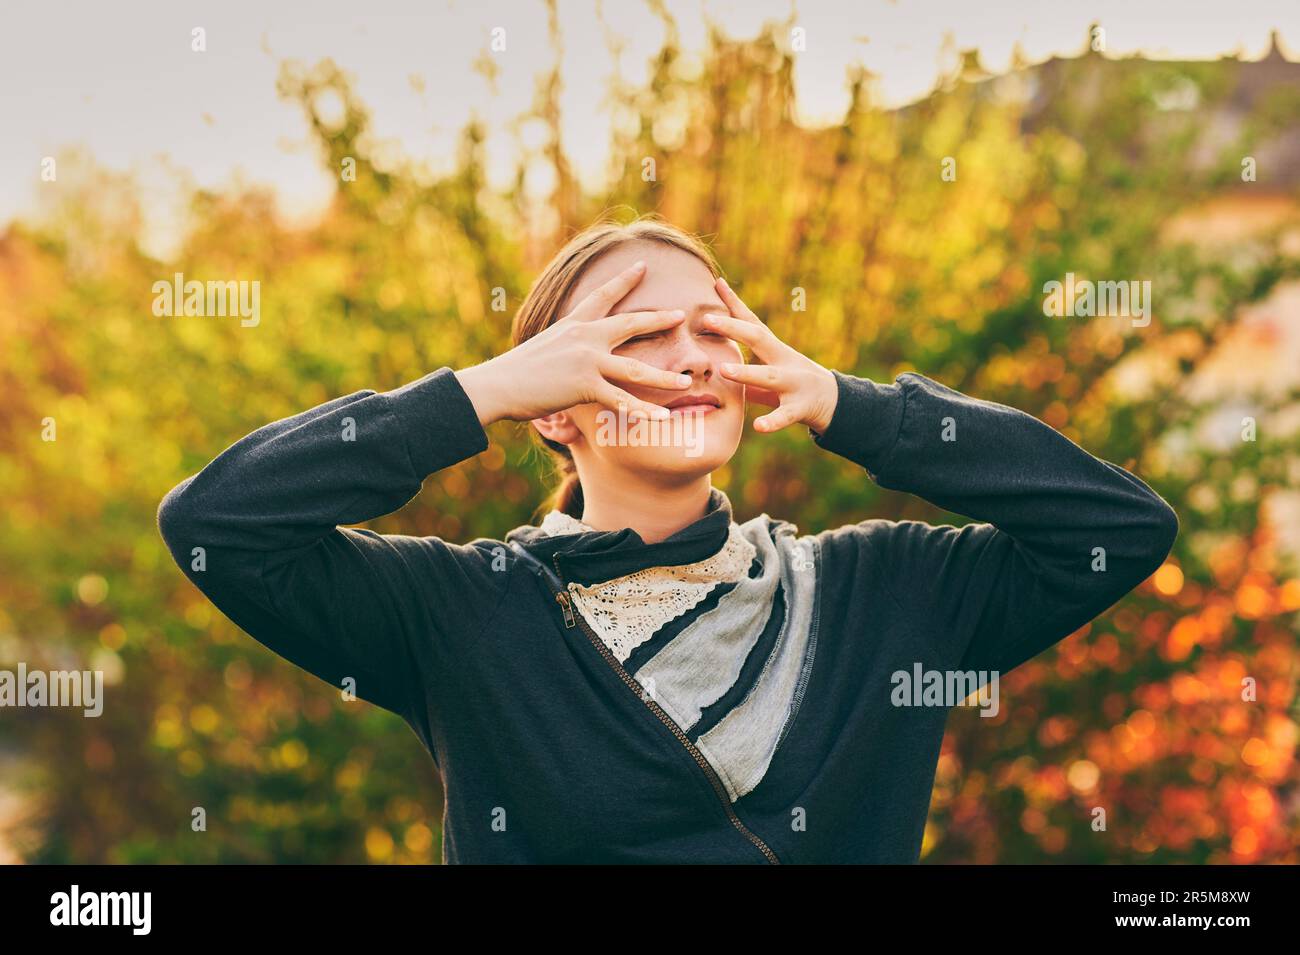 Freiluftporträt eines jungen Teenagers im goldenen Licht, das Gesicht mit den Händen versteckt Stockfoto